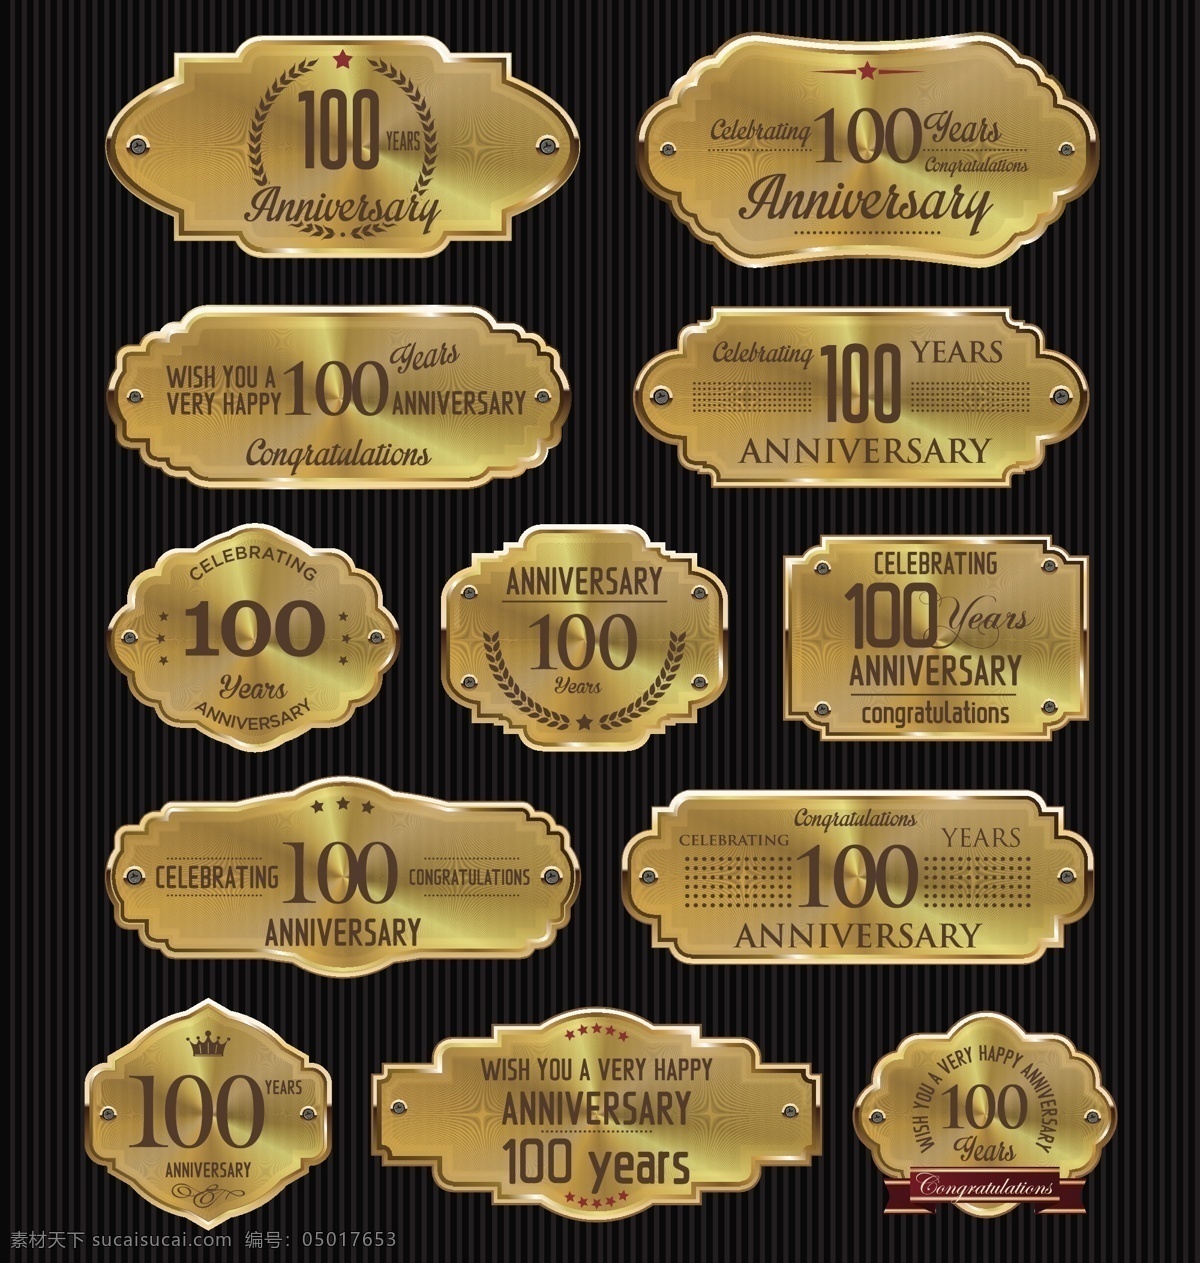 金色 周年纪念 标签 矢量 金属 条纹 100周年 橄榄枝 标牌 铭牌 矢量图 ai格式 黑色